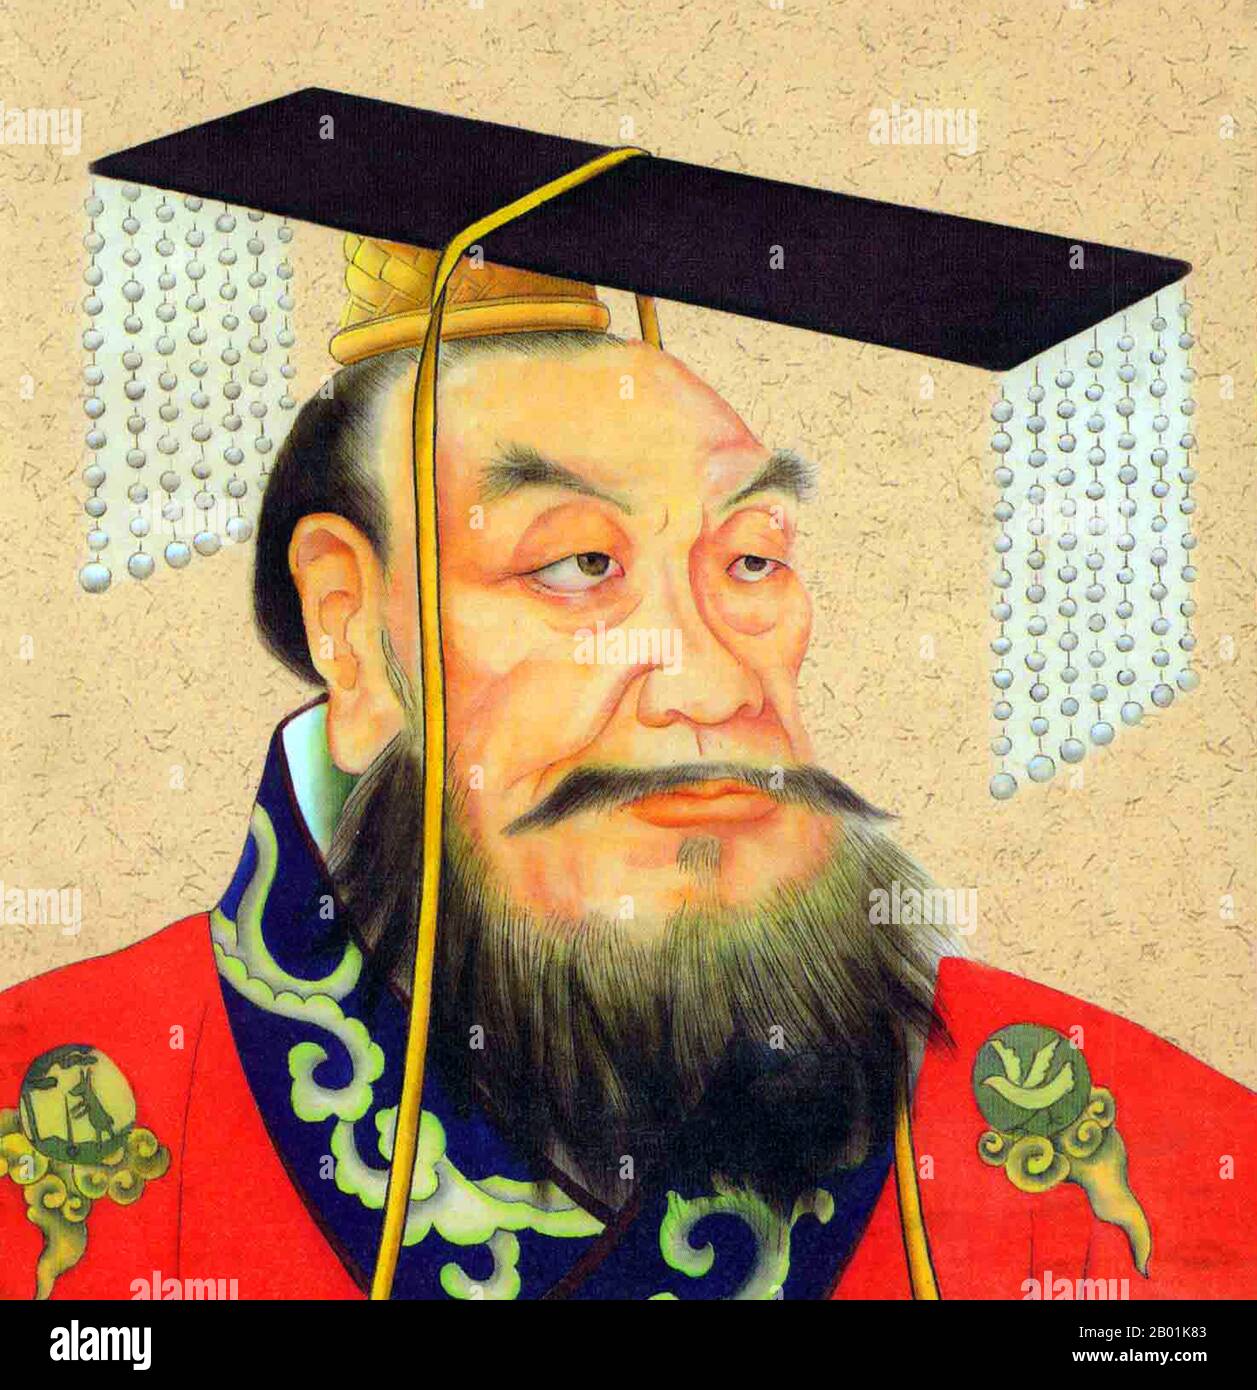 Chine : Qin Shu Huang / Qin Shi Huangdi (259-210 av. J.-C.), Premier empereur d'une Chine unifiée. Portrait à rouleau suspendu, c. 19e siècle. Qin Shi Huang, nom personnel Ying Zheng, était roi de l'État chinois de Qin de 246 à 221 av. J.-C. pendant la période des États combattants. Il devint le premier empereur d'une Chine unifiée en 221 av. J.-C., et régna jusqu'à sa mort en 210 av. J.-C. à l'âge de 49 ans. Se faisant appeler « Premier empereur » après l'unification de la Chine, Qin Shi Huang est une figure centrale de l'histoire chinoise, inaugurant près de deux millénaires de domination impériale. Banque D'Images